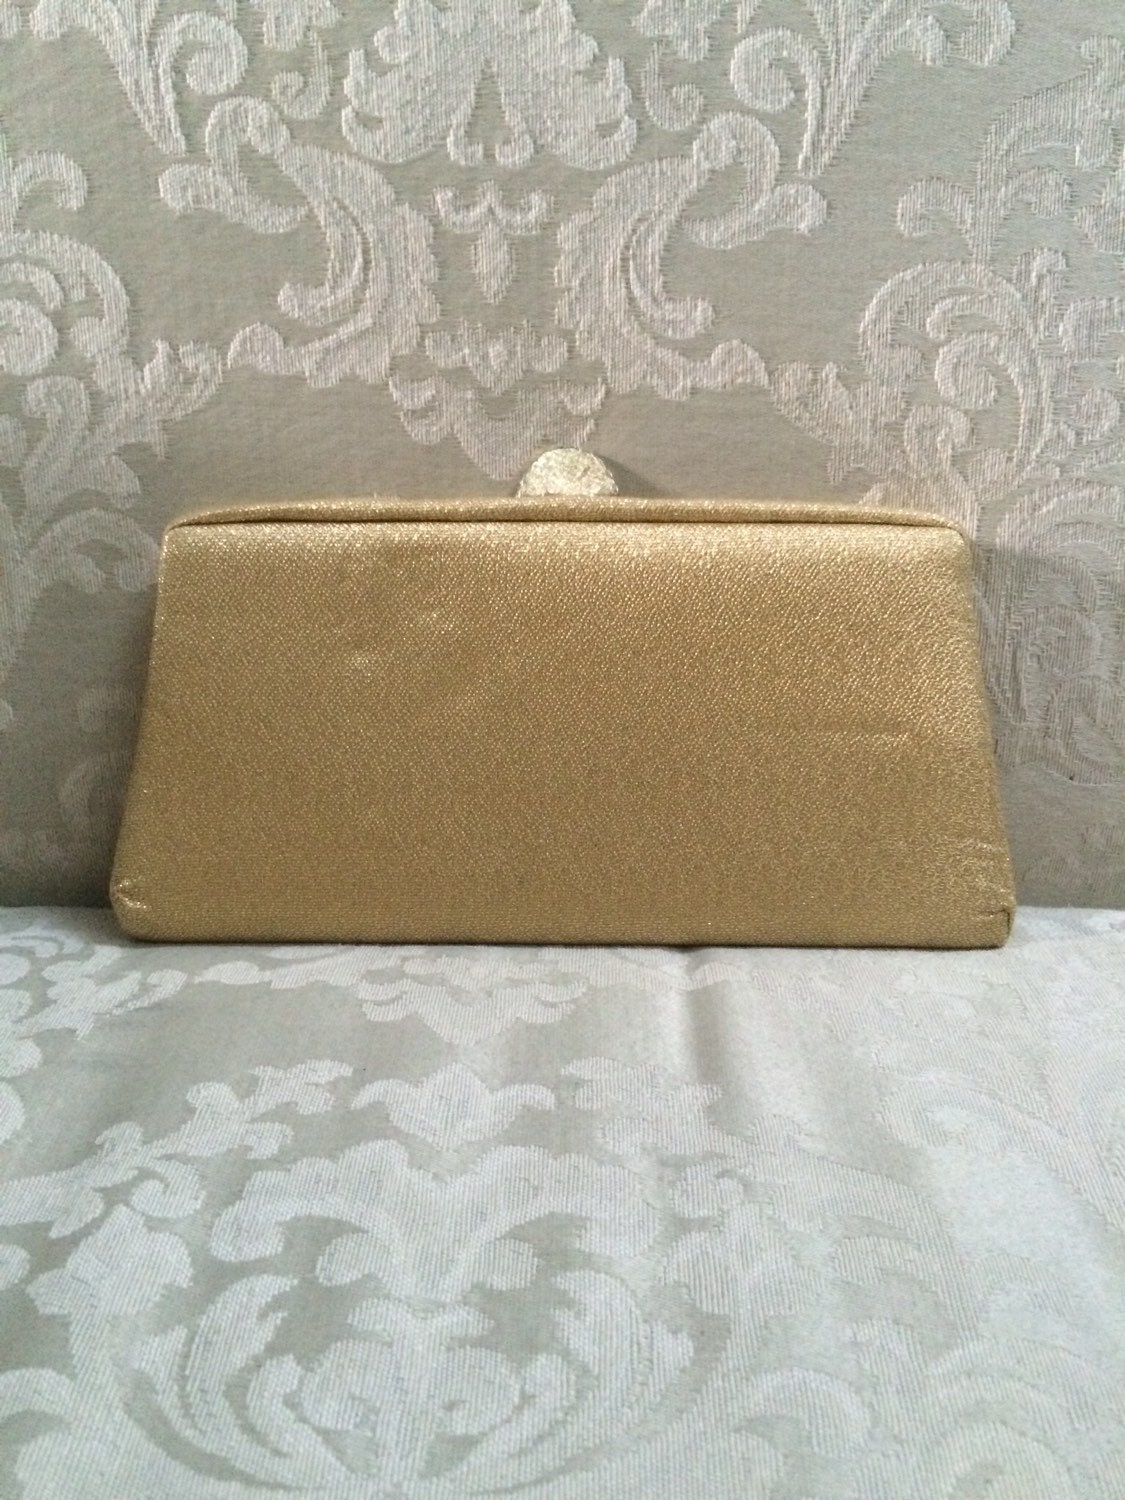 Vintage Gold Clutch Gold Evening Clutch Embellished Handbag | Etsy